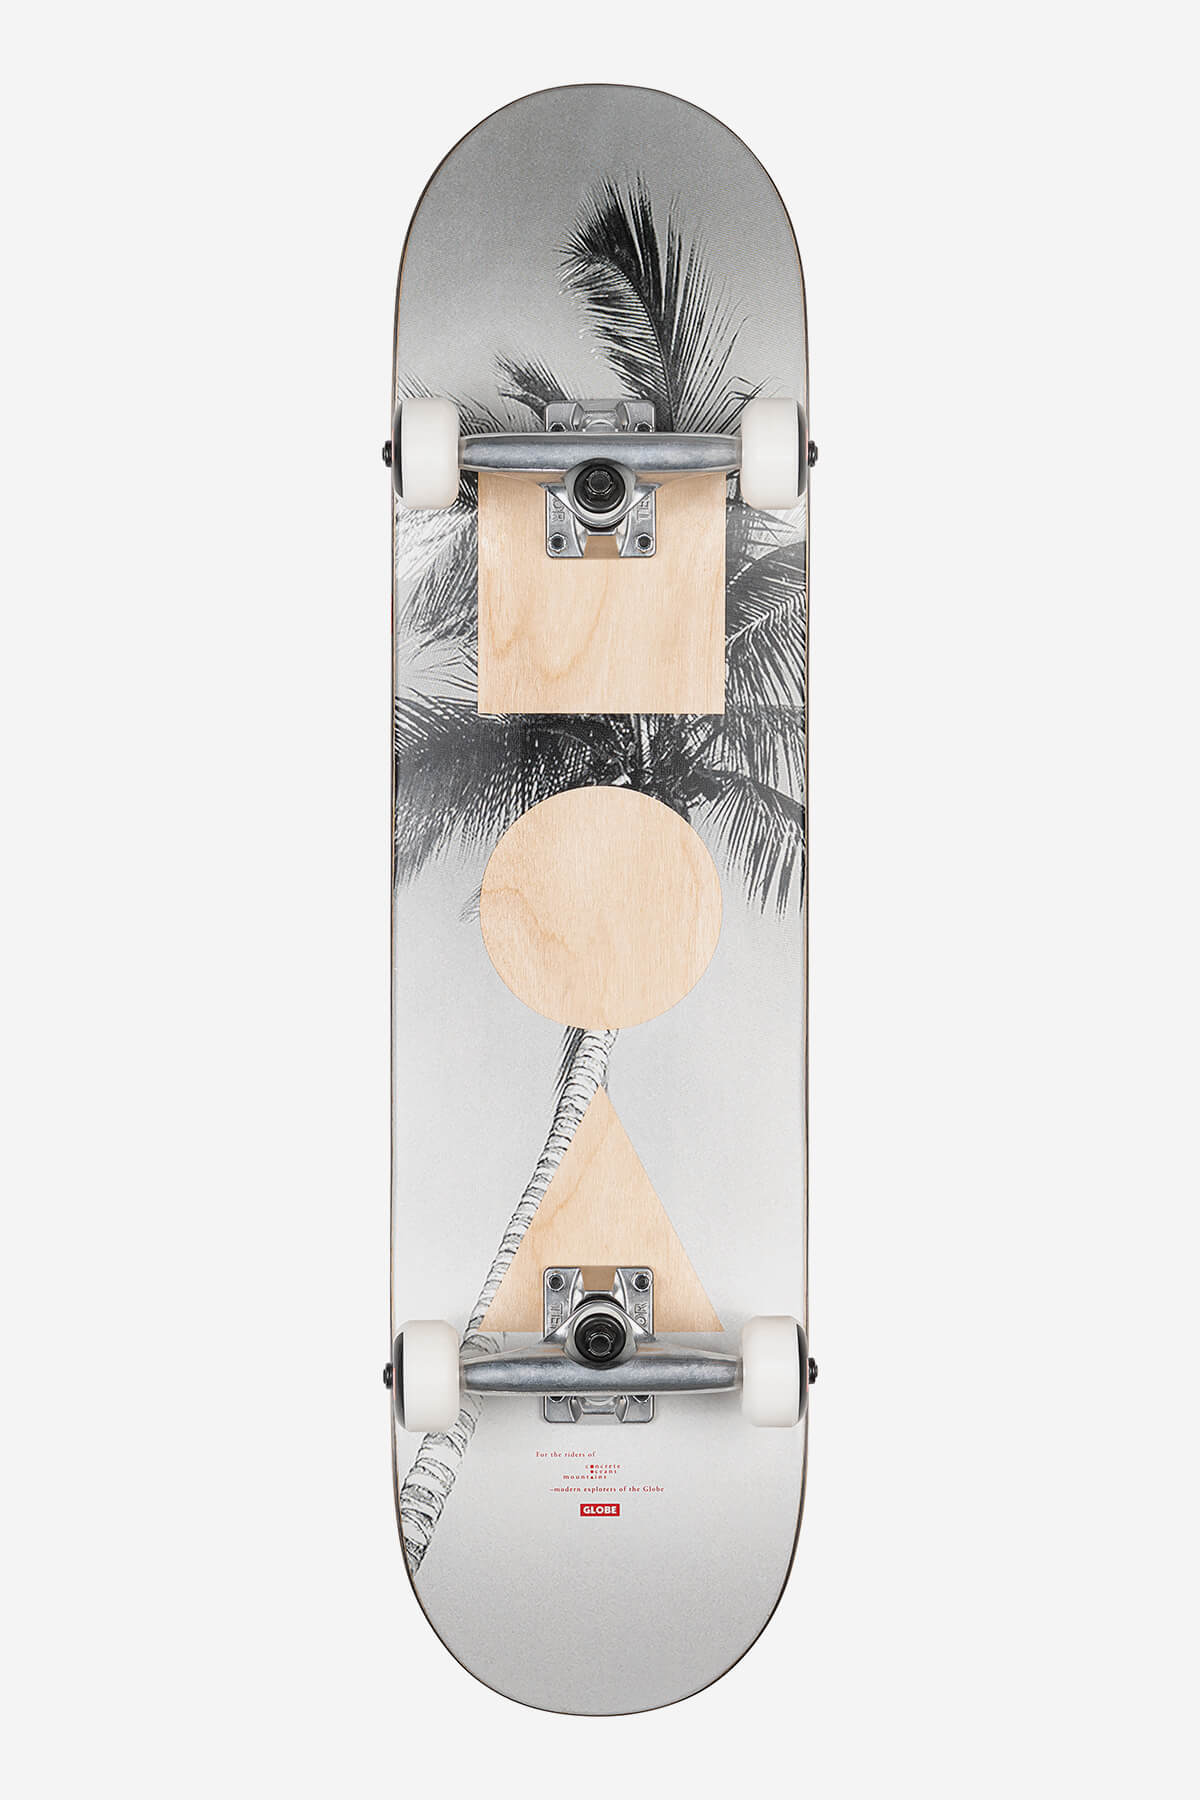 Globe Skateboard completa G1 Stack  8.0" Completa Skateboard en Lone Palm